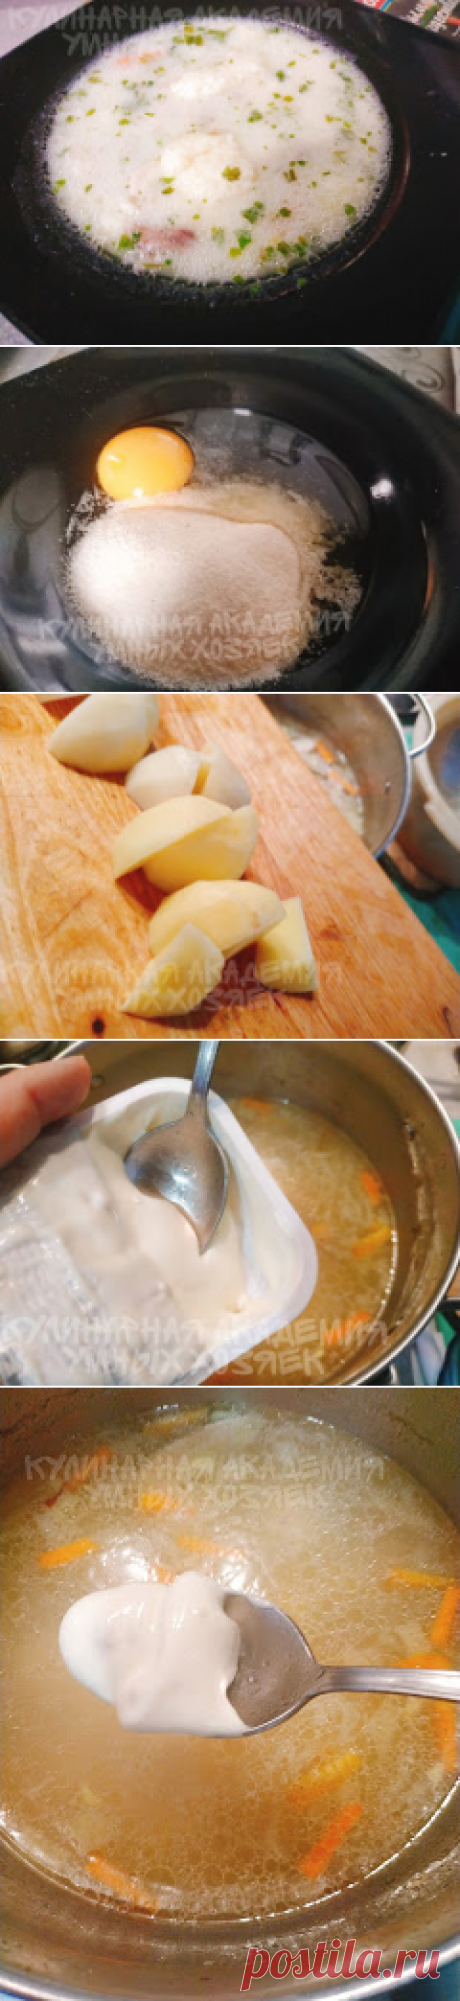 Куриный суп с сыром и манными галушками - Кулинарная Академия Умных Хозяек